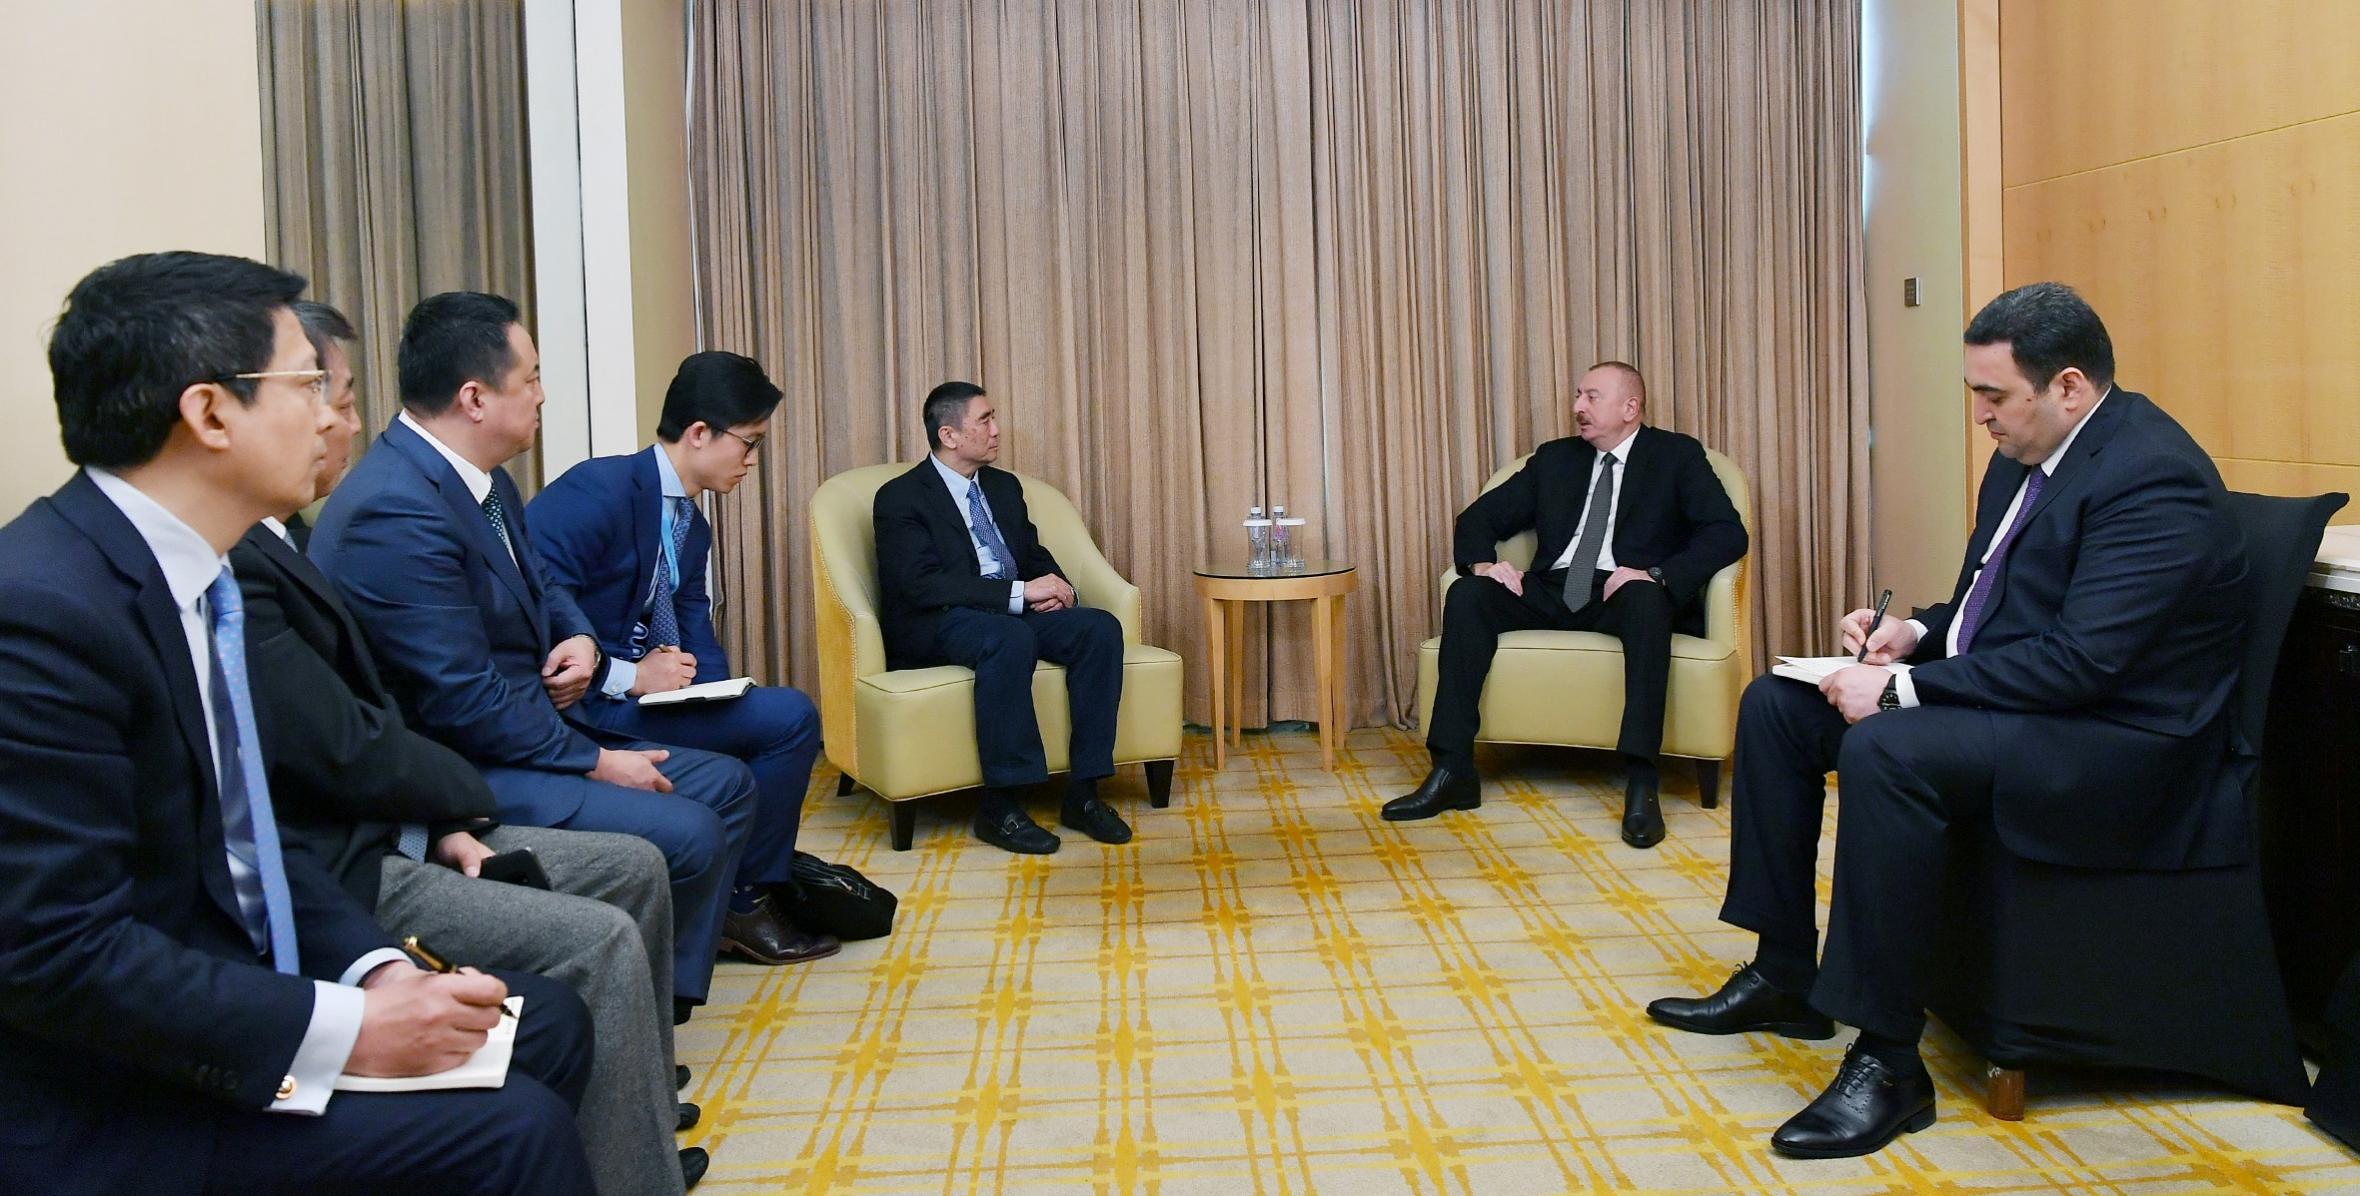 İlham Əliyev "China Poly Group" Korporasiyasının sədri ilə görüşüb